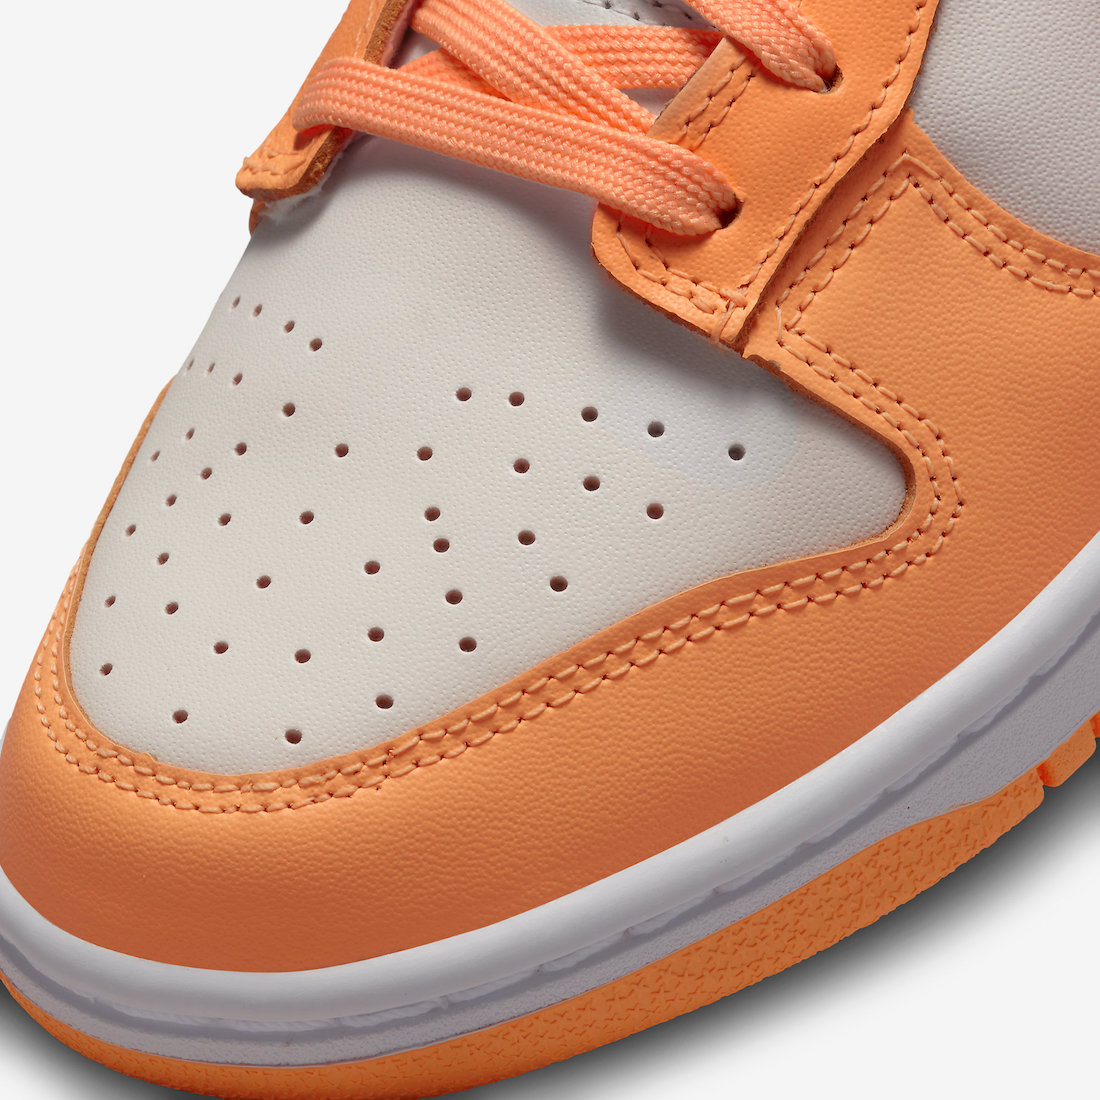 Nike Dunk Low Peach Cream DD1503-801 Release Date Info